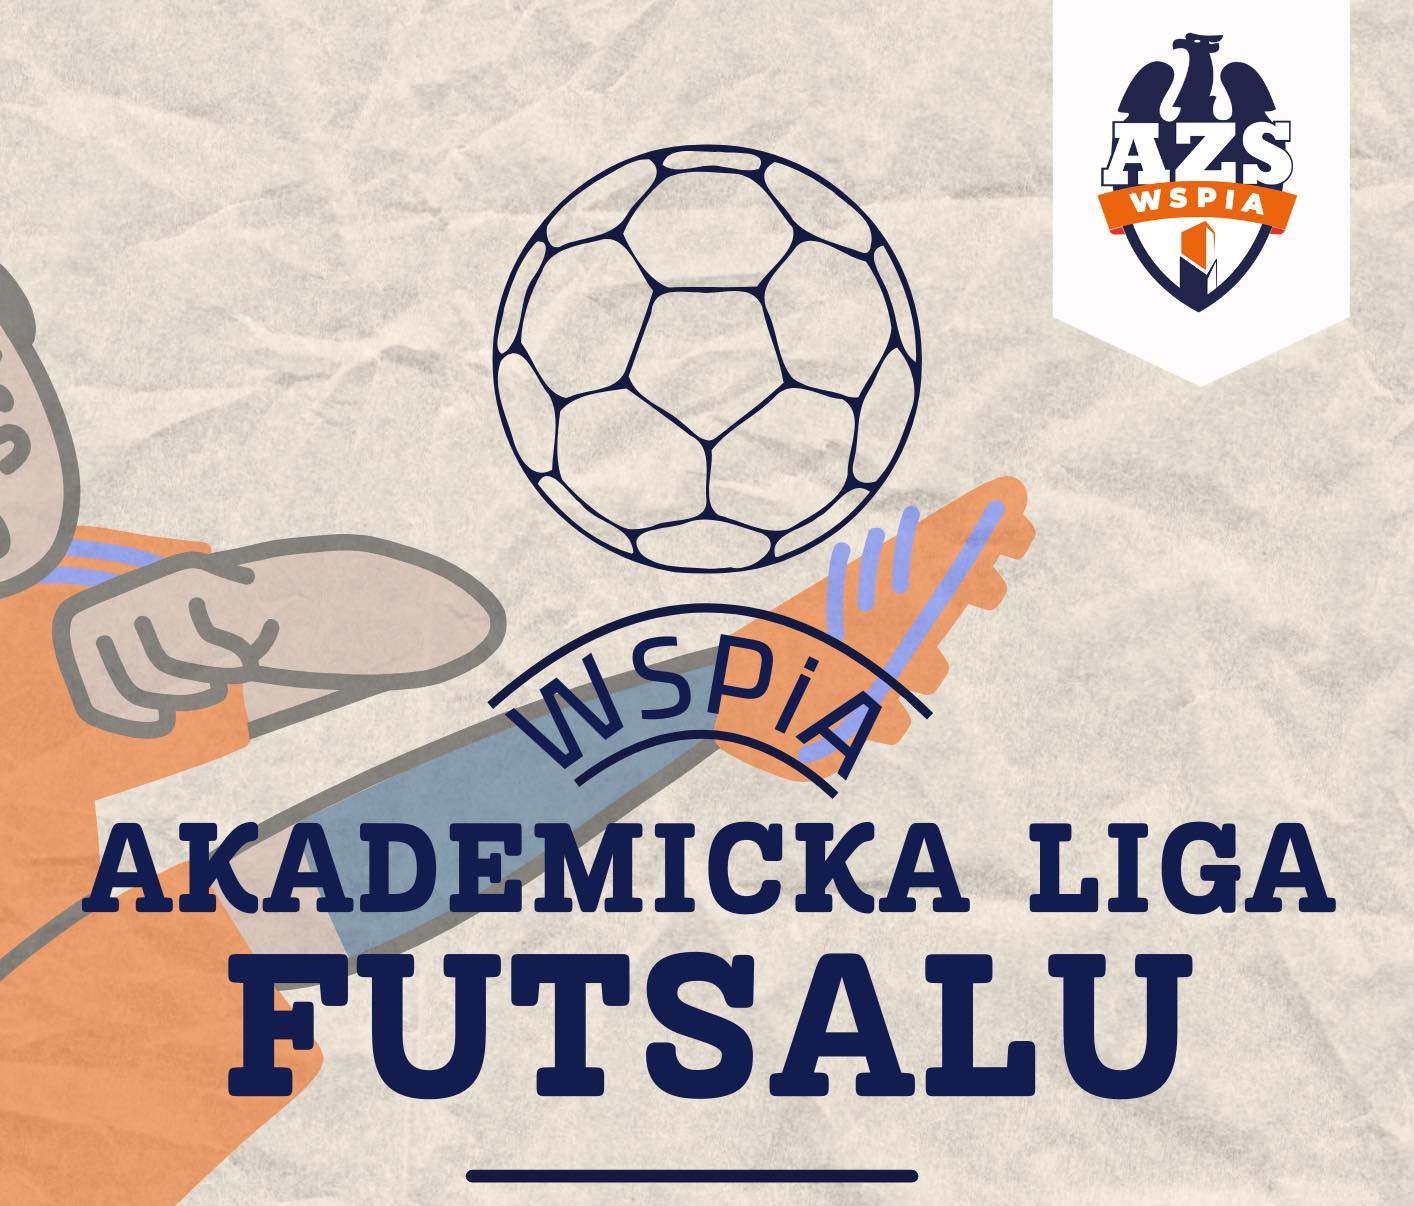 Przedłużamy zapisy do Akademickiej Ligi Futsalu w WSPiA